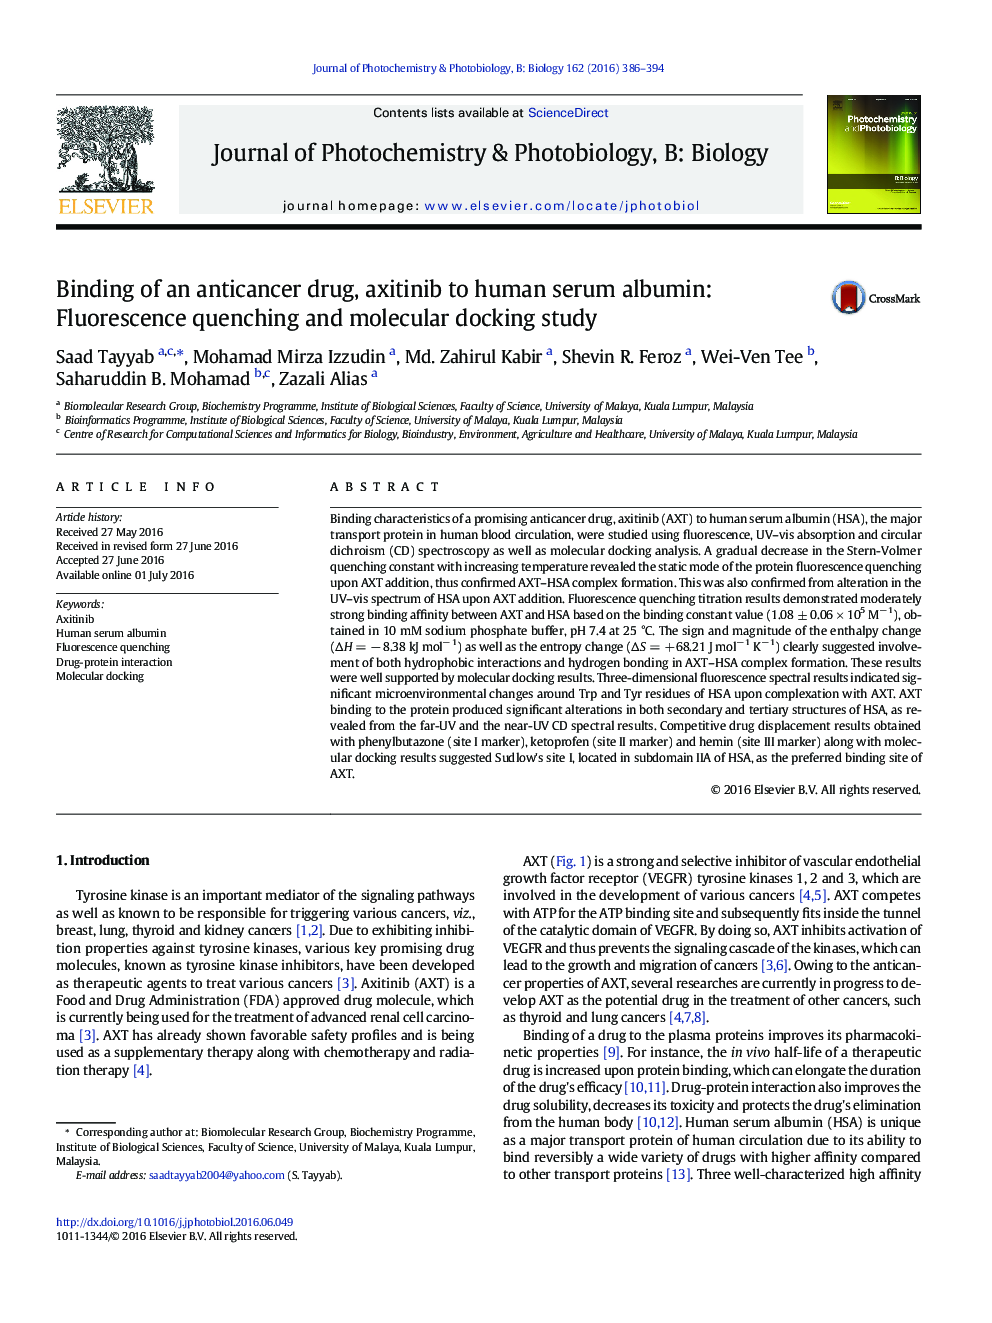 اتصال داروهای ضد سرطان، آکسیتینیب به آلبومین سرم انسان: مطالعه ی خنک سازی فلورسانس و ملکولی 